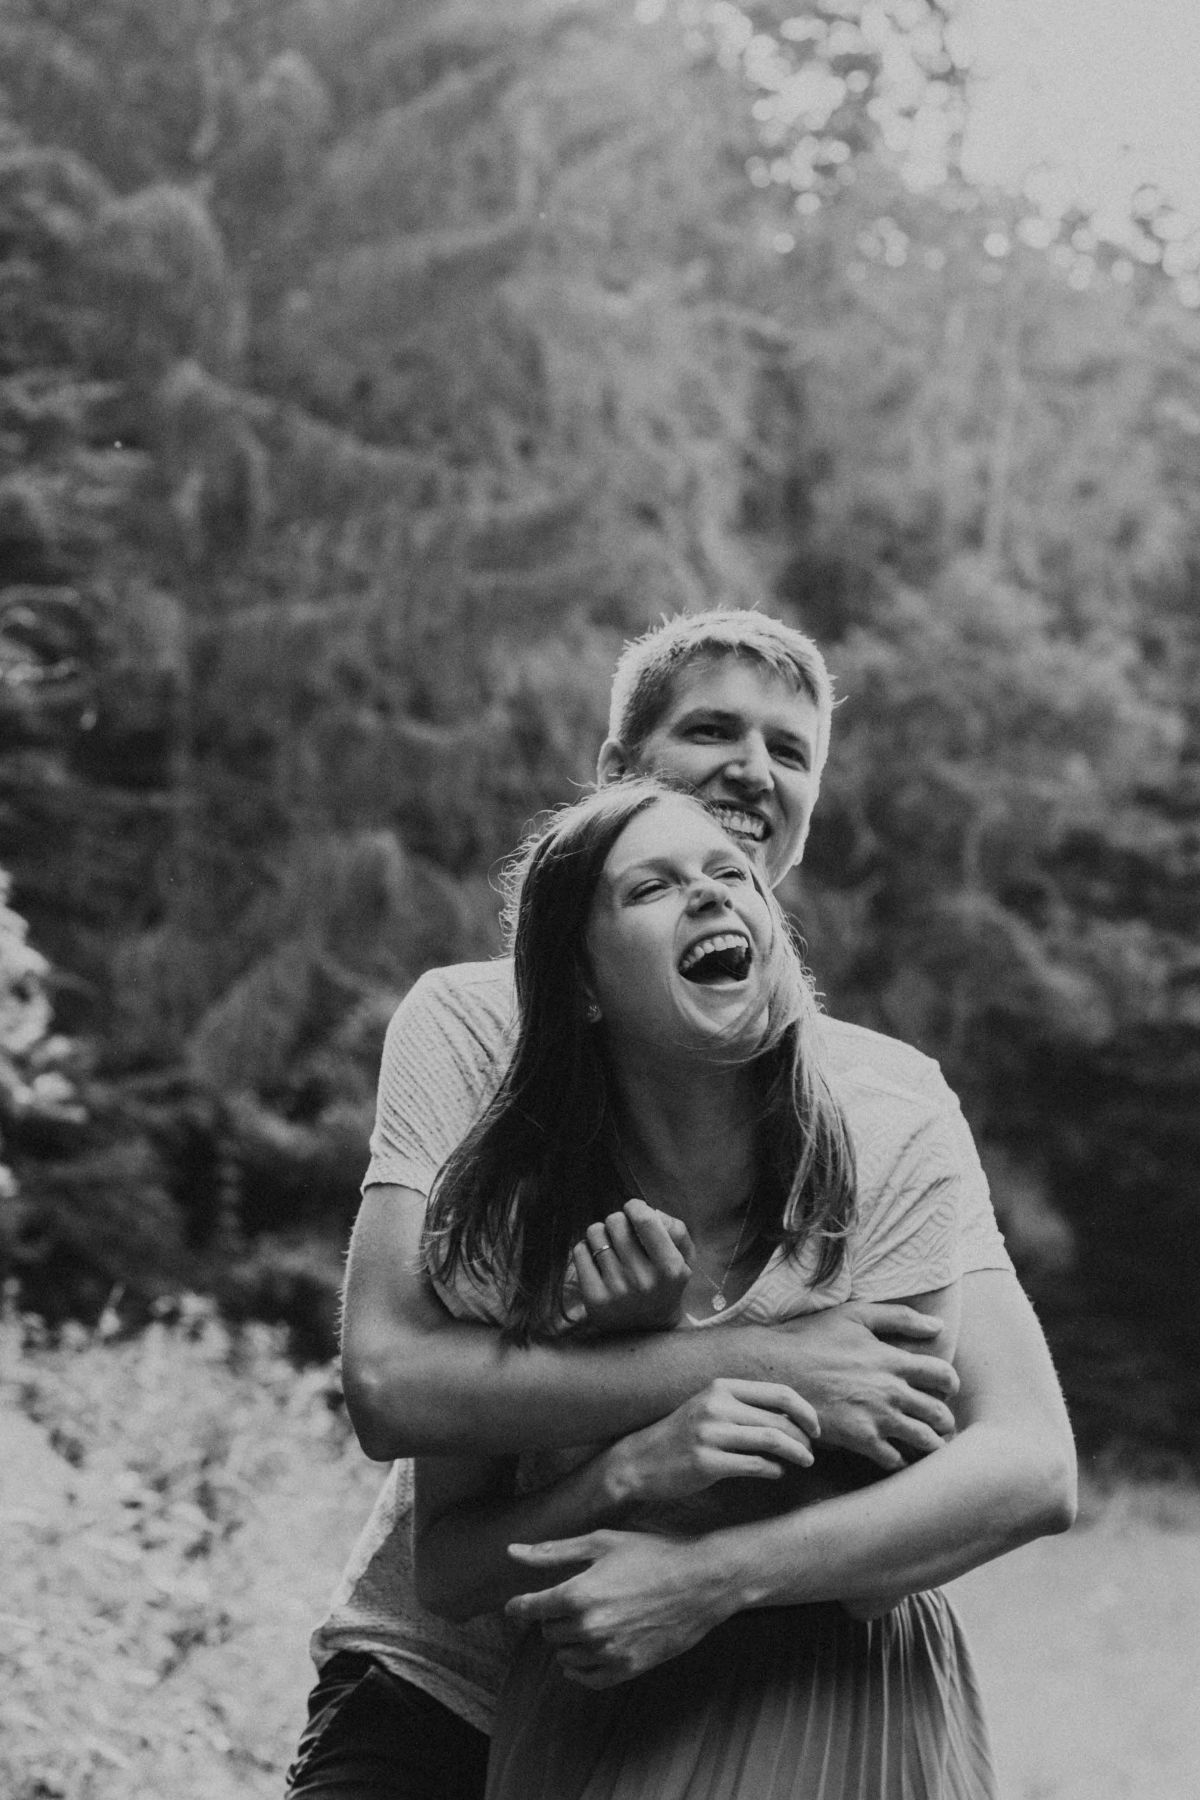 Mann umarmt Frau, beide lachen